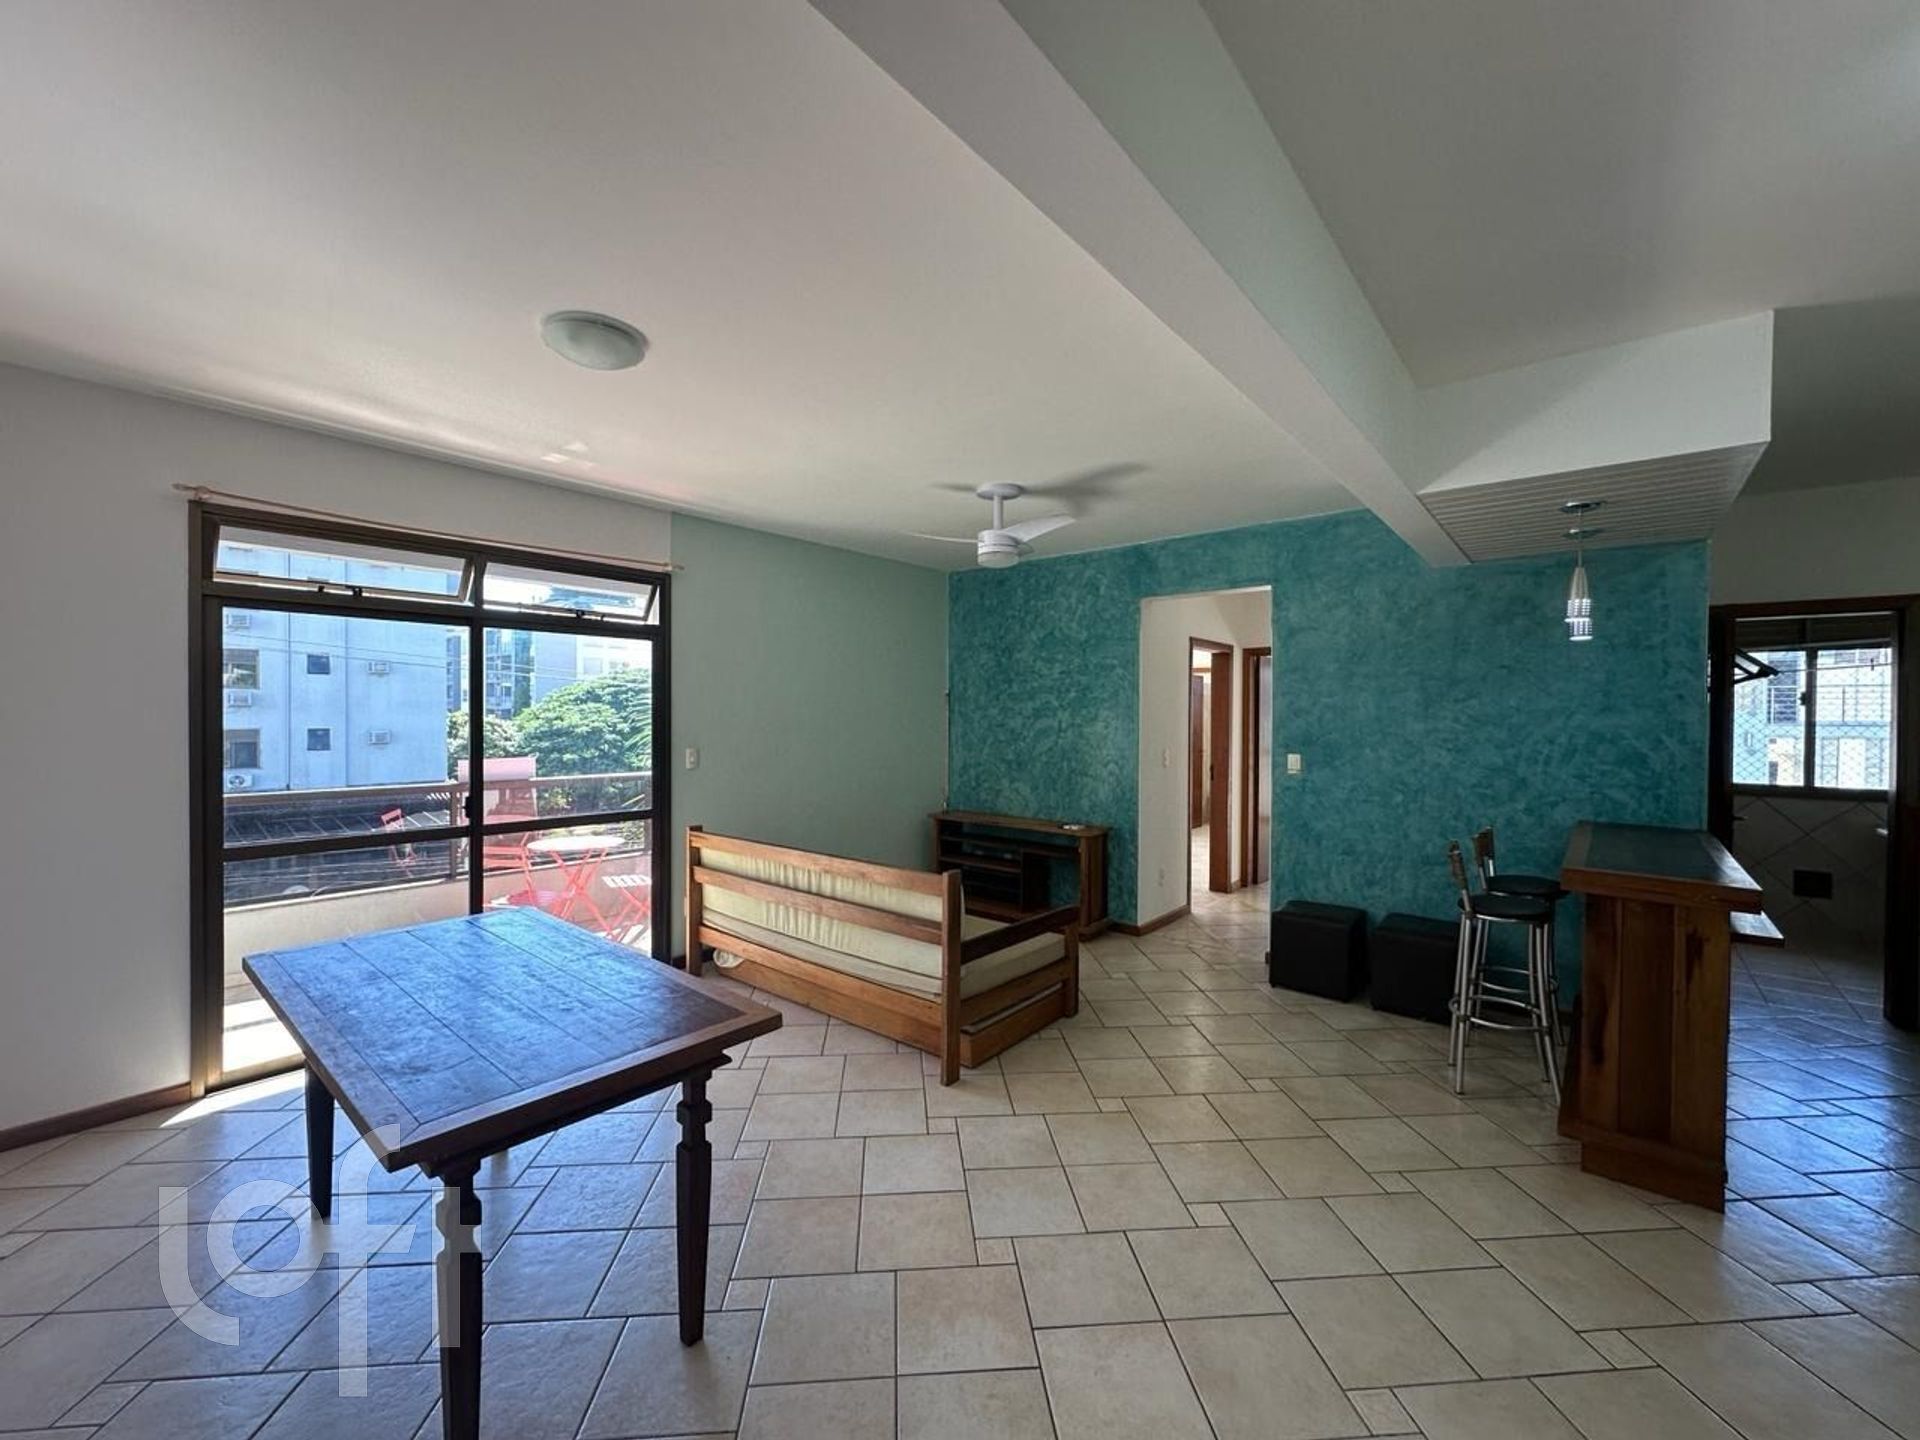 VENDA &#8211; Apartamento de 2 quartos no bairro Jurere Leste, Florianópolis &#8211; PU162dve1